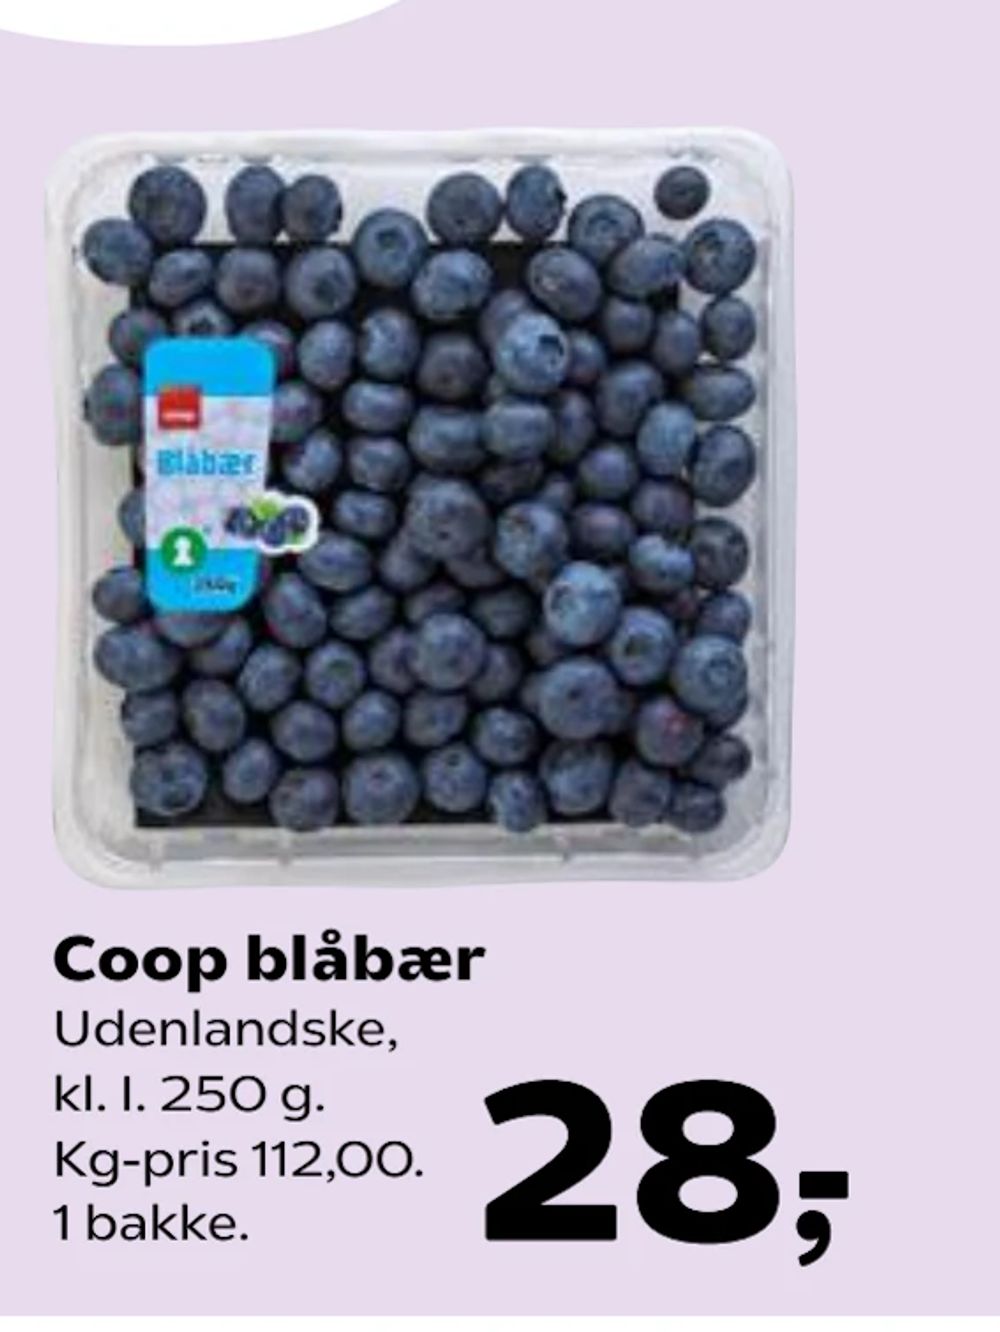 Tilbud på Coop blåbær fra SuperBrugsen til 28 kr.